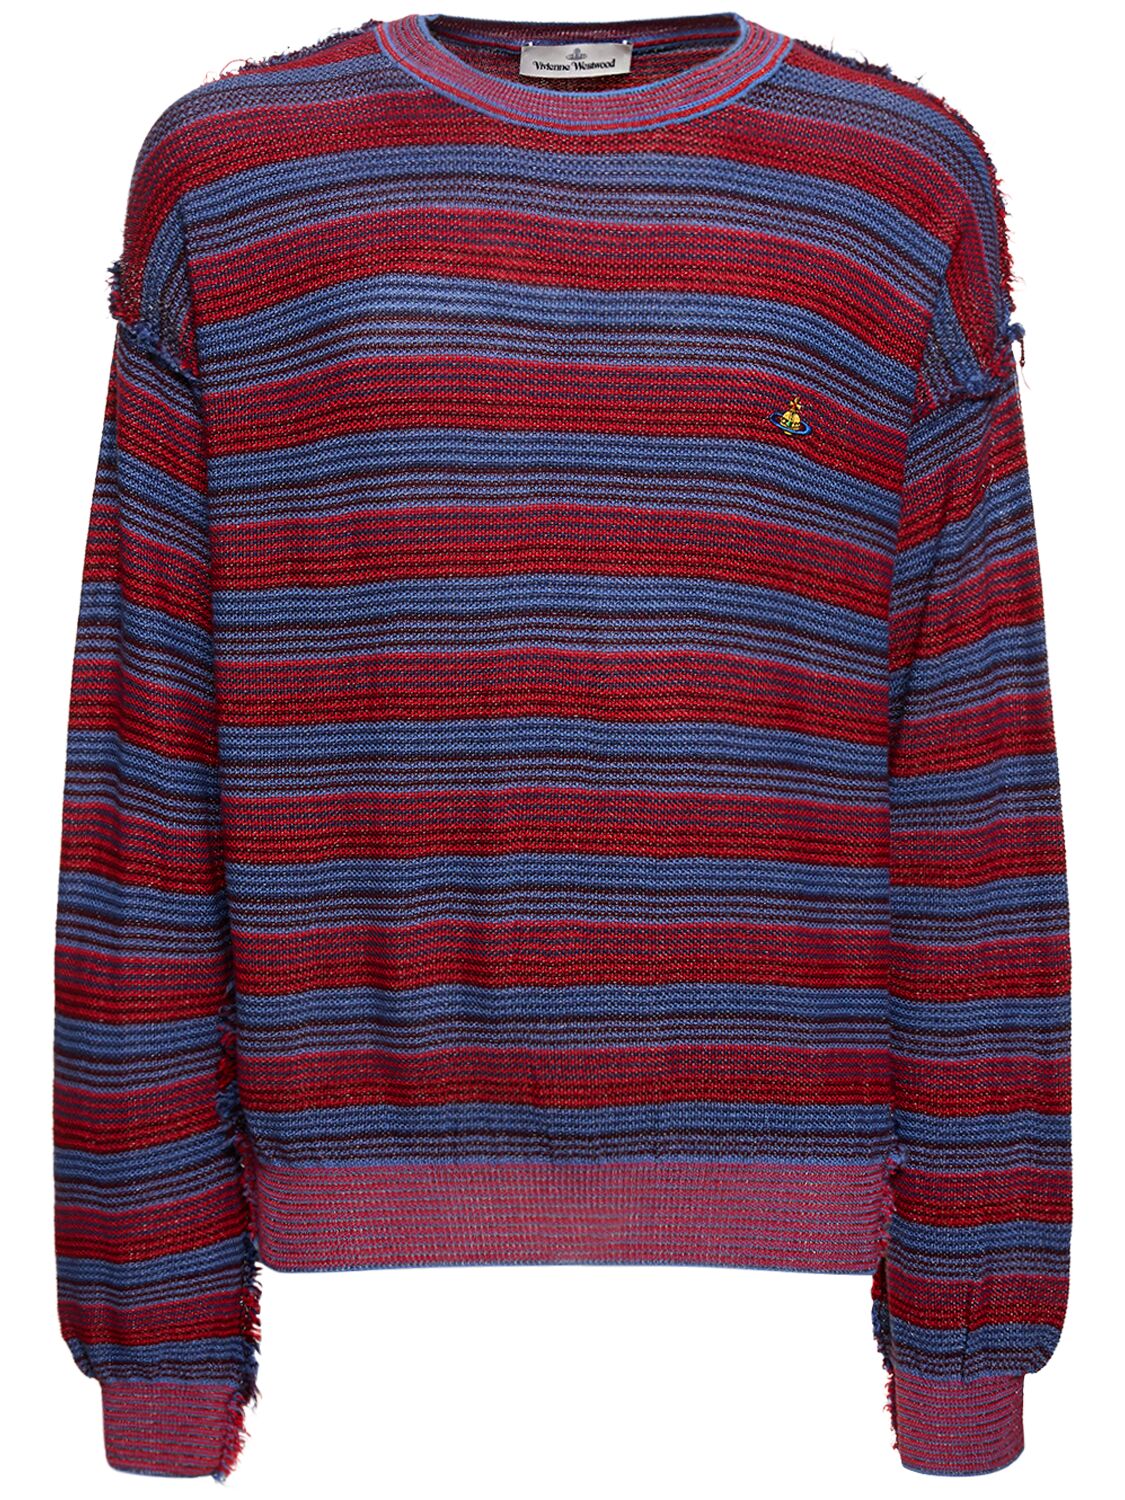 Vivienne Westwood Striped Wool & Silk Knit Sweater In Red,purple